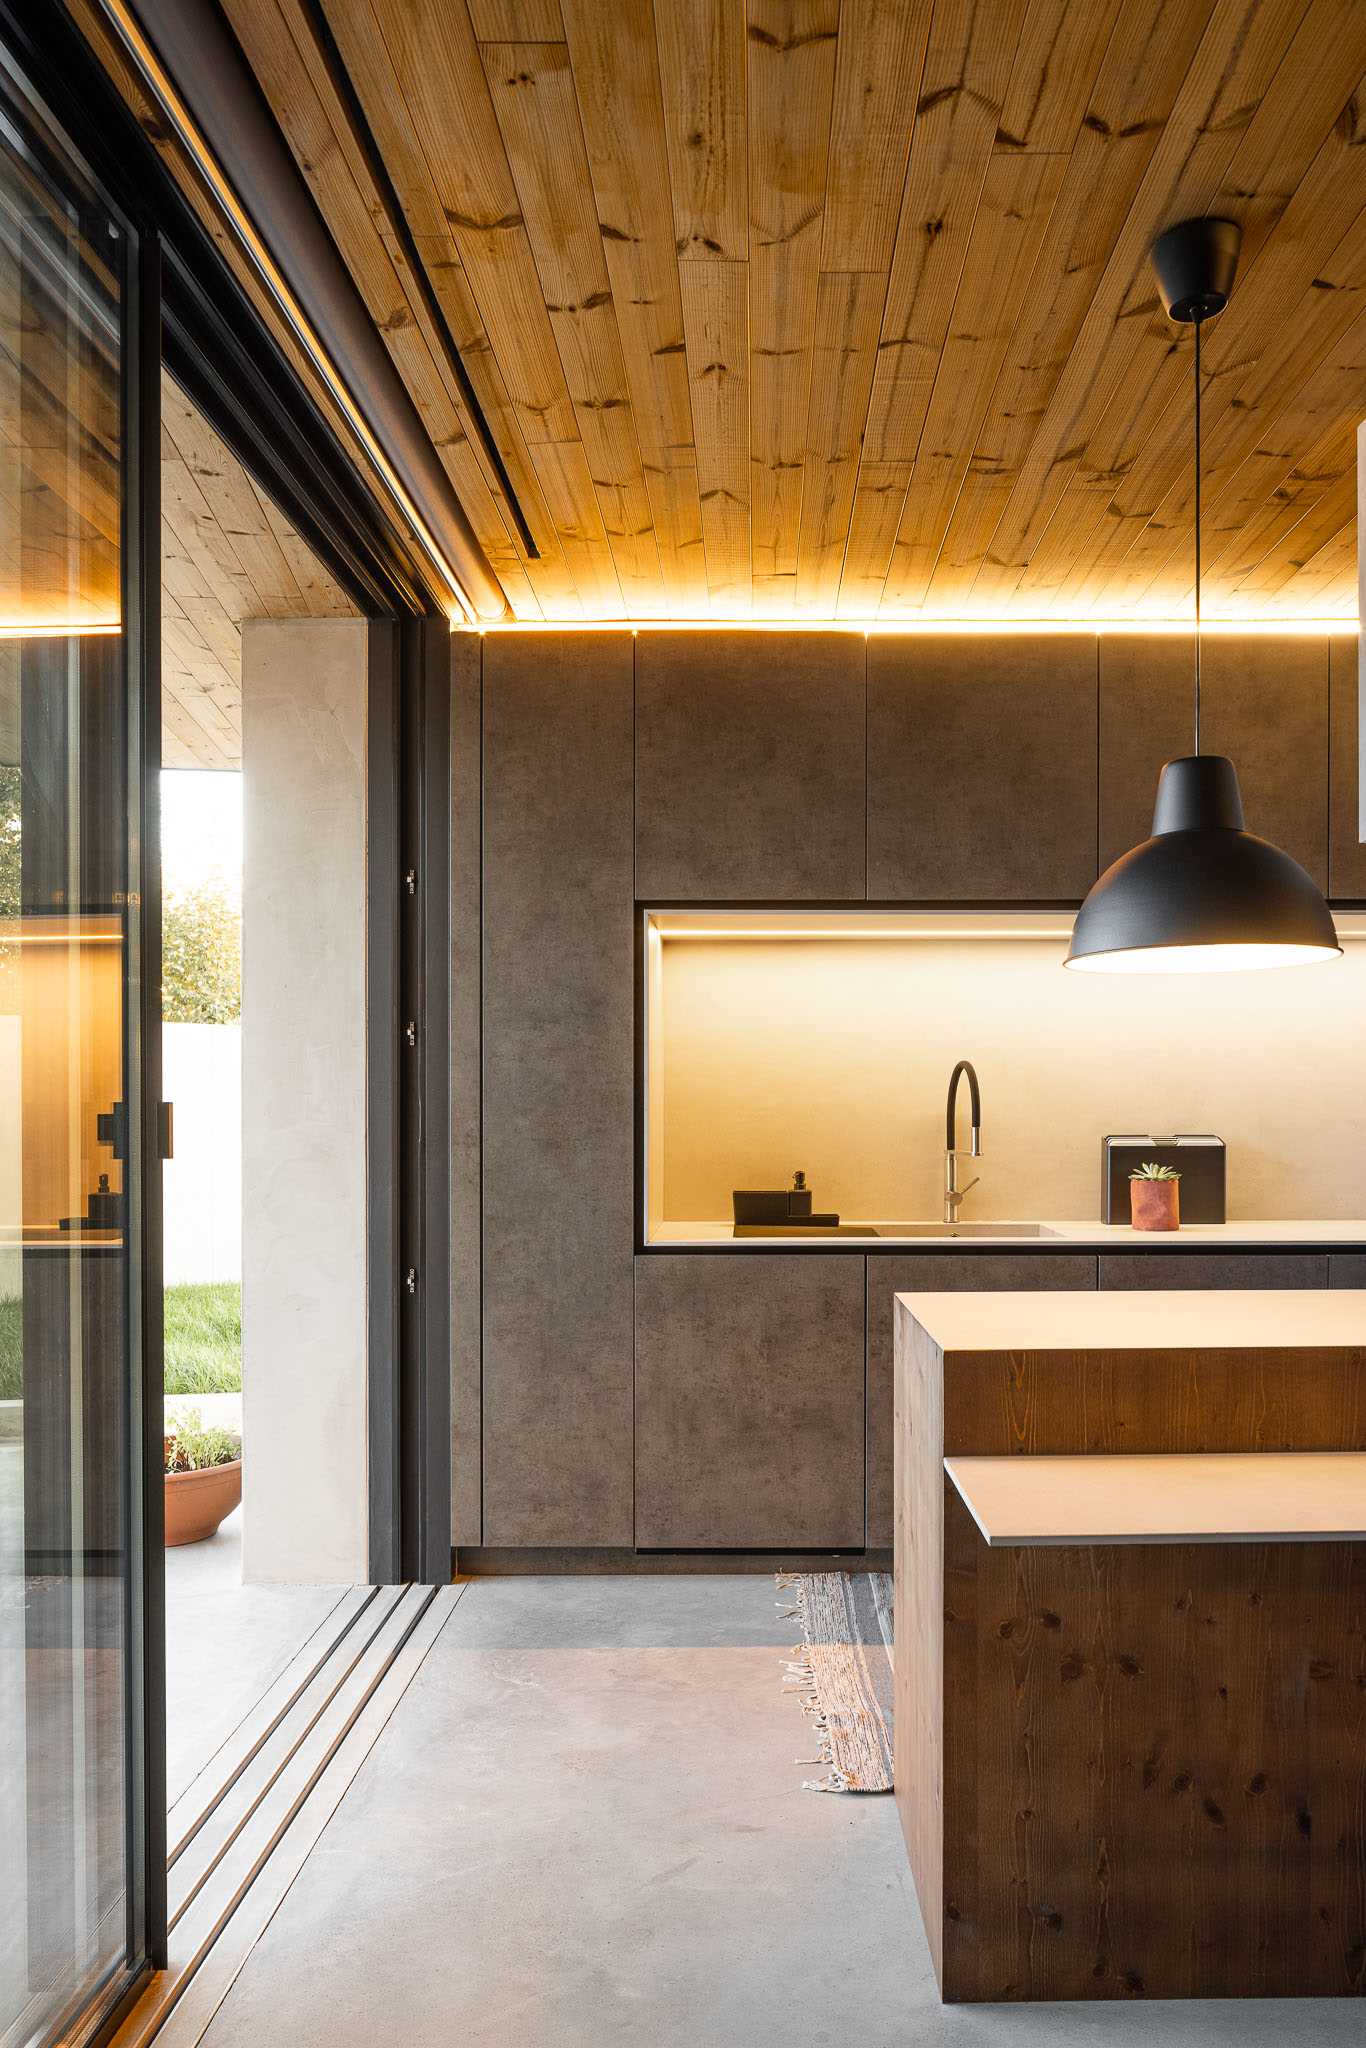 A modern kitchen with hidden lighting.